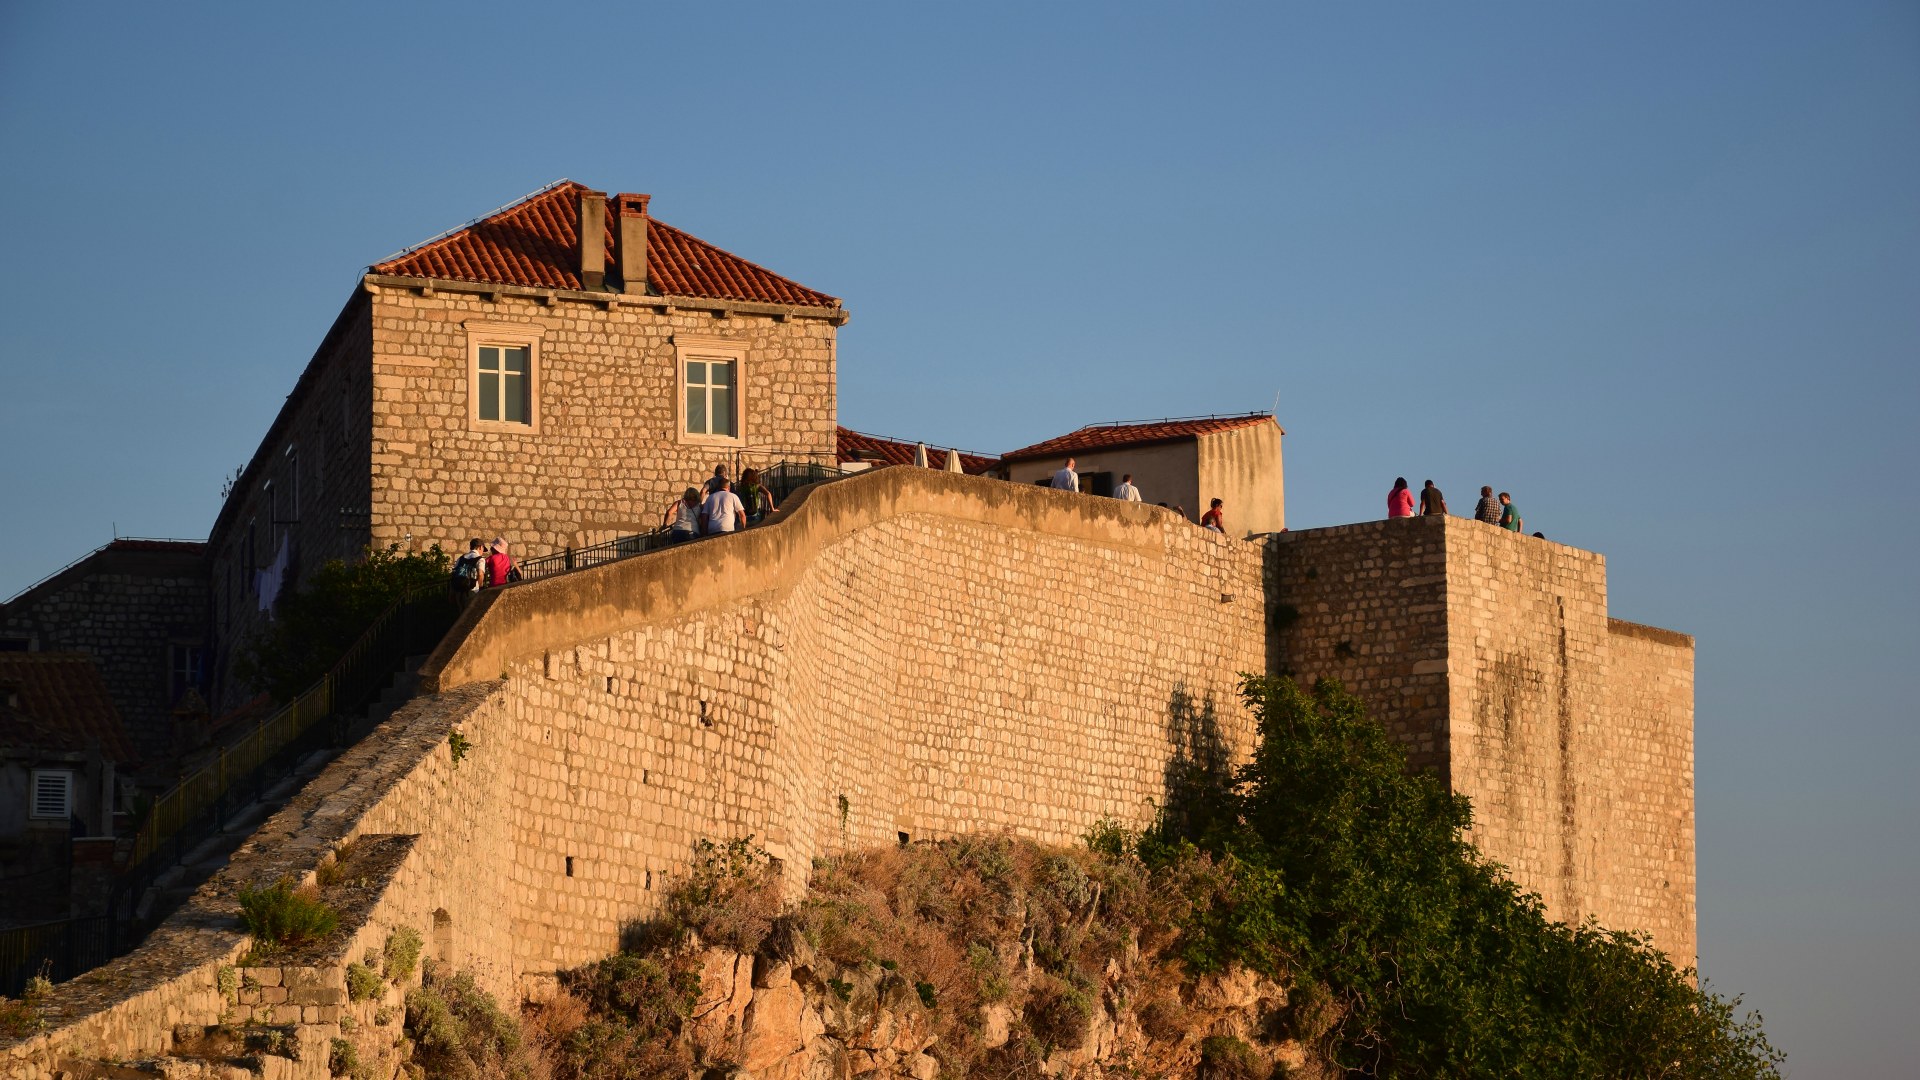 Dubrovnik Old City Walls